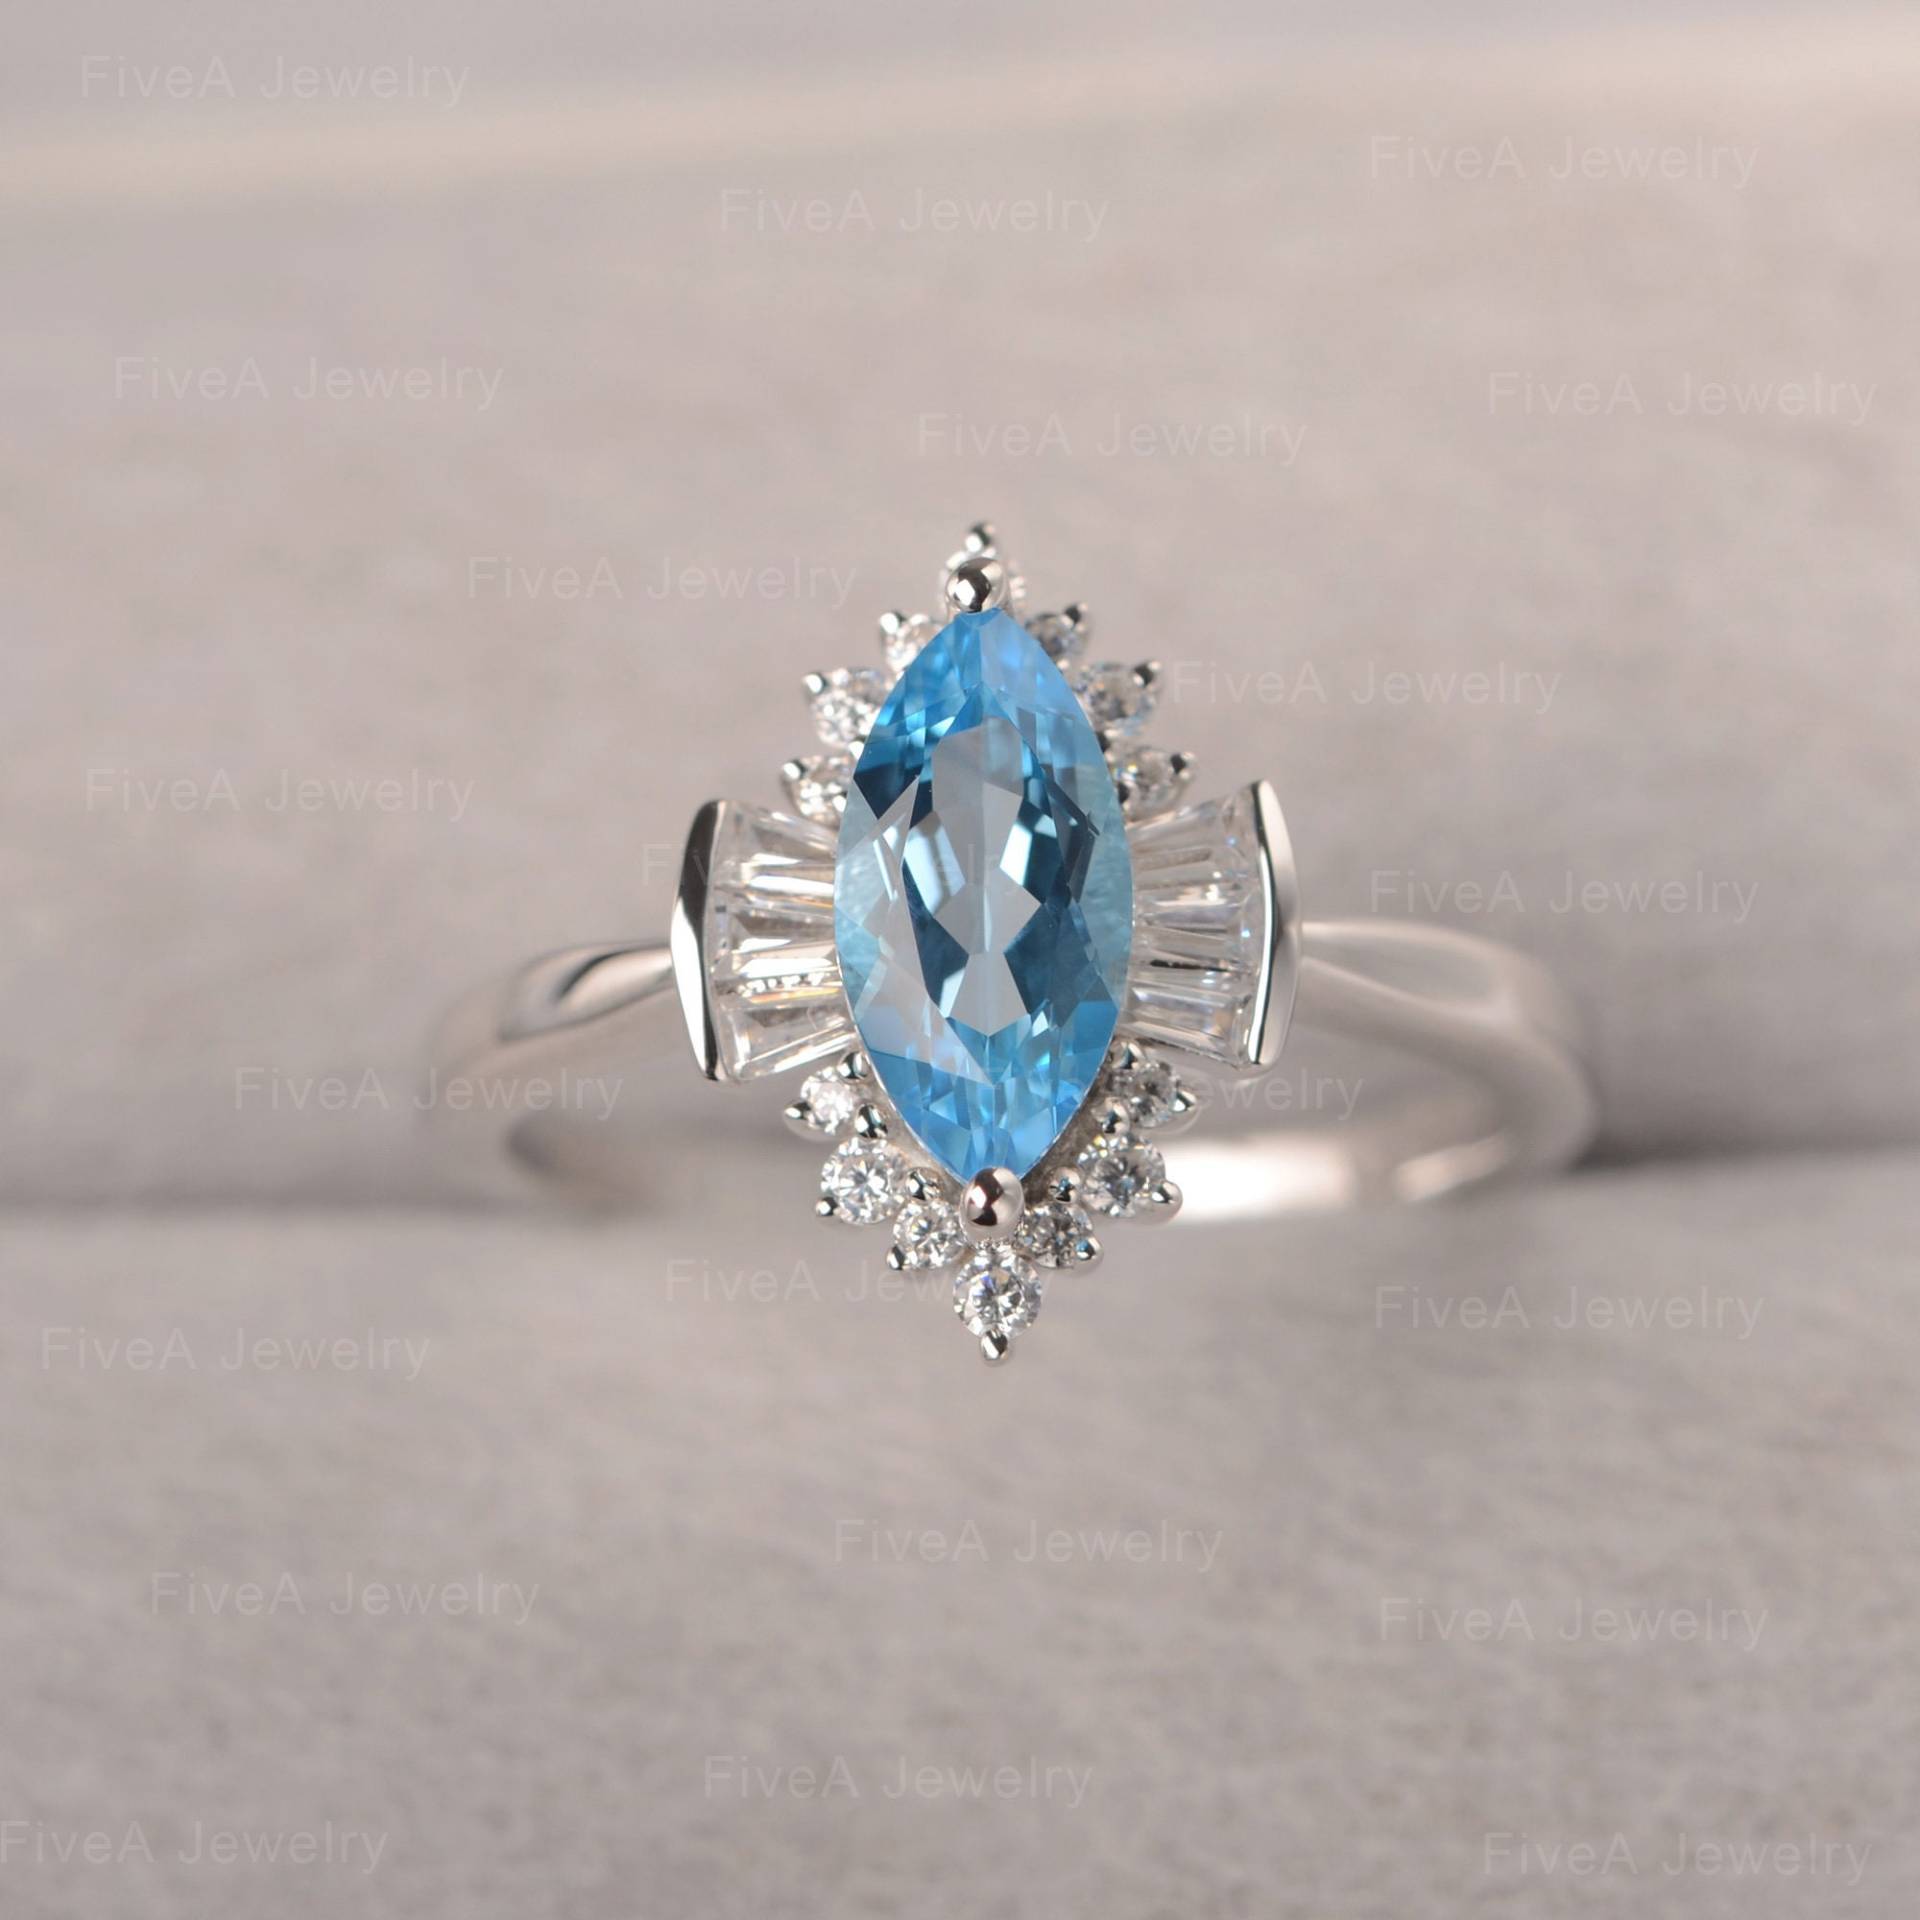 Schweizer Blau Topas Blume Geformt Cluster Ring Marquise Verlobungsring Für Frauen von FiveAjewelry